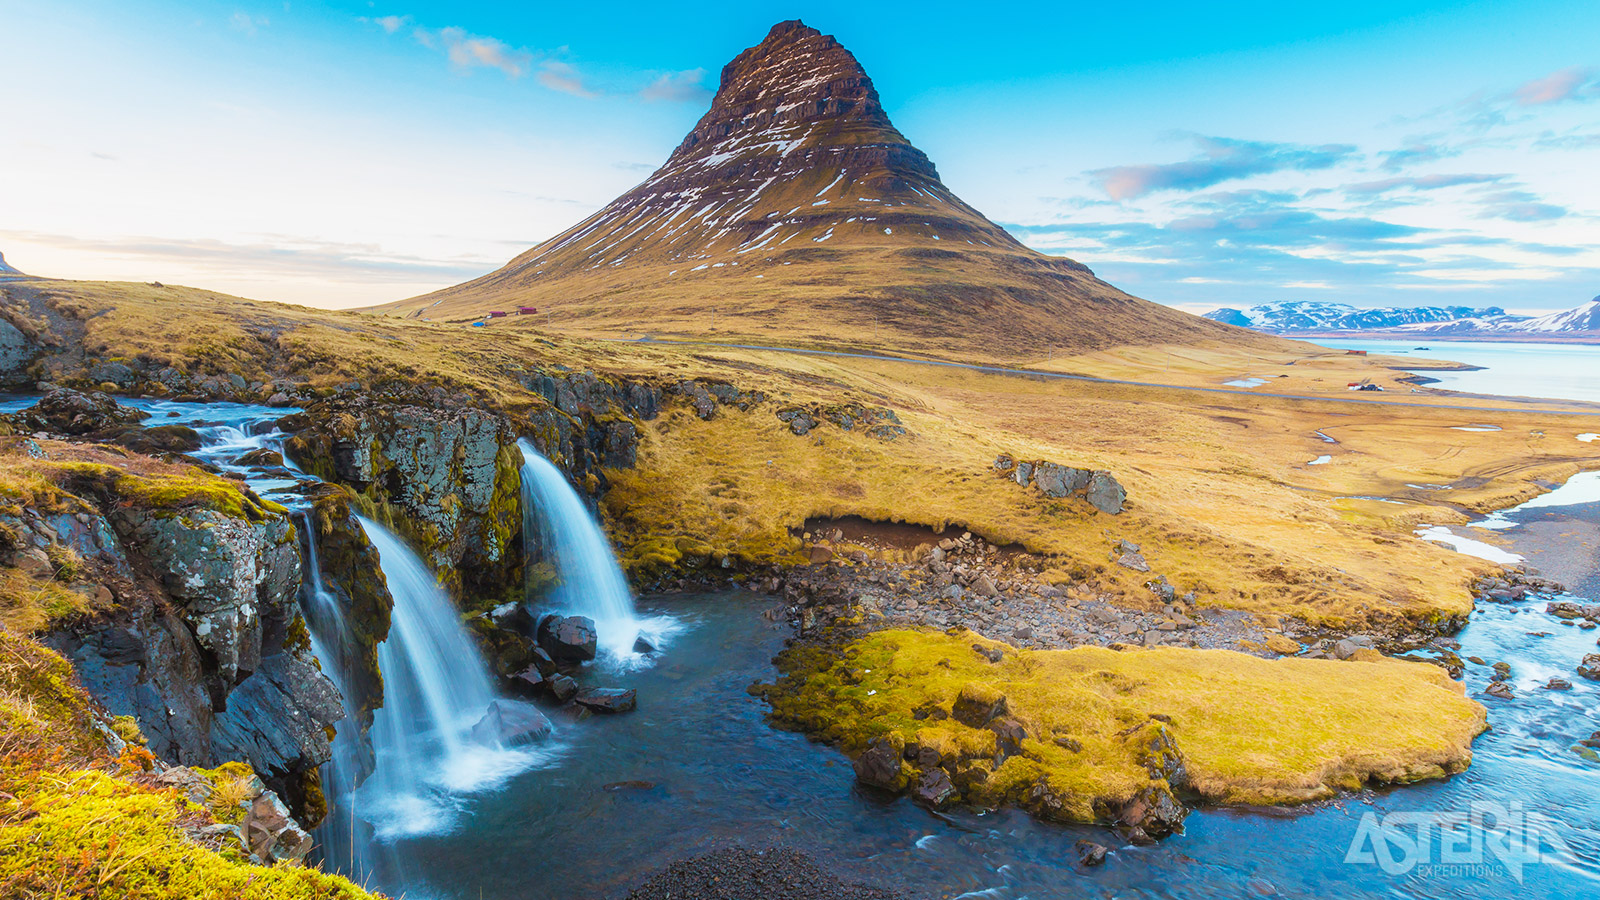 Het schiereiland Snæfellsnes heeft alles wat je van IJsland verwacht: lavavelden, zwarte stranden, steile kliffen, vulkanen, vogelrotsen en geothermische bronnen en wordt ook wel ’IJsland in het klein’ genoemd